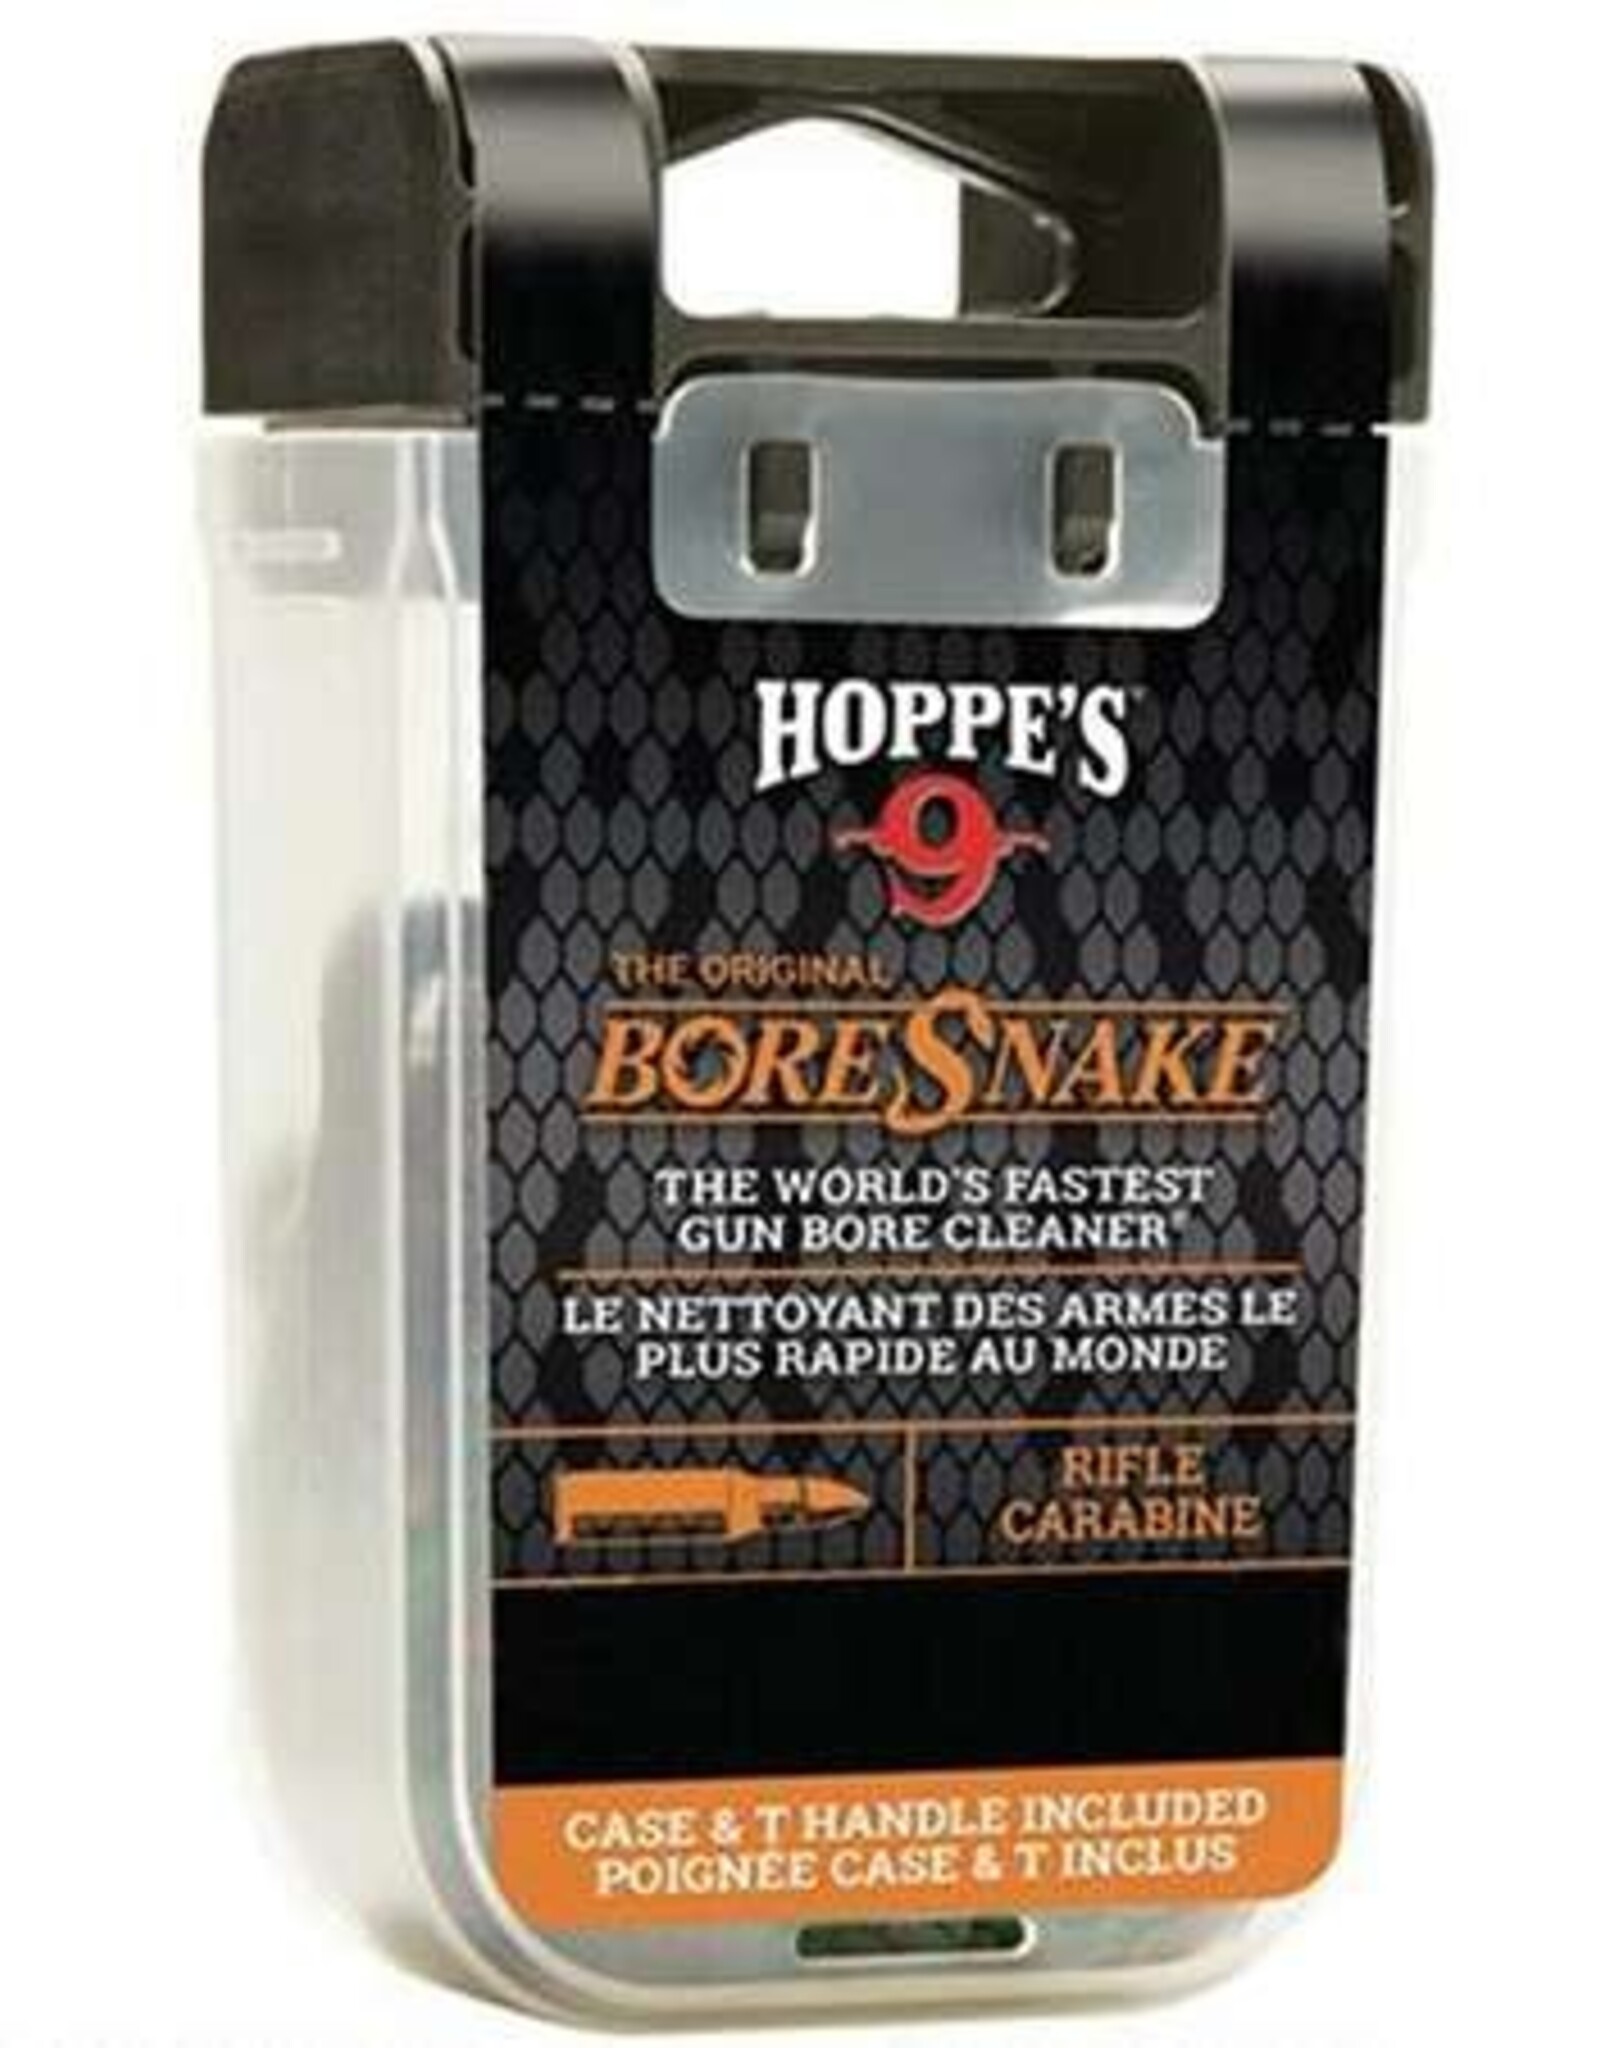 Hoppe's 9 Bore Snake